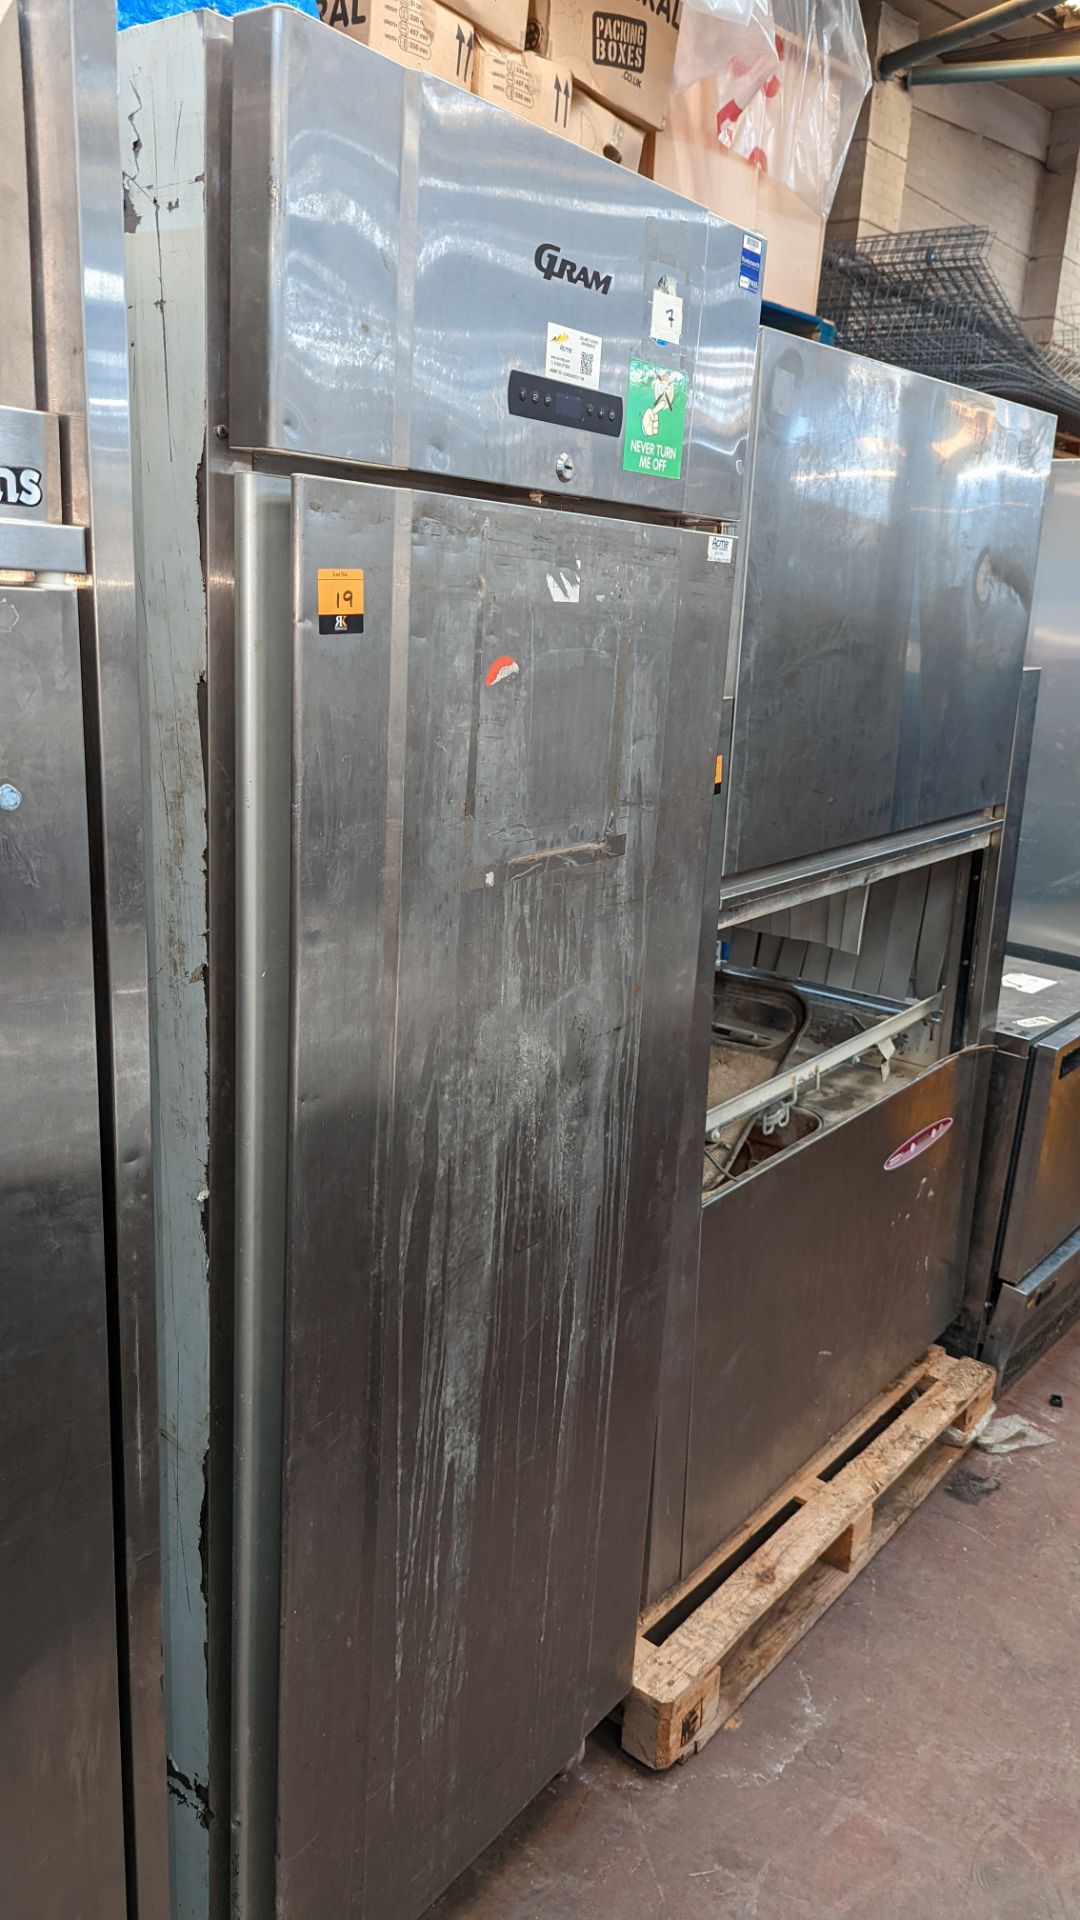 Gram stainless steel commercial fridge - Image 2 of 4